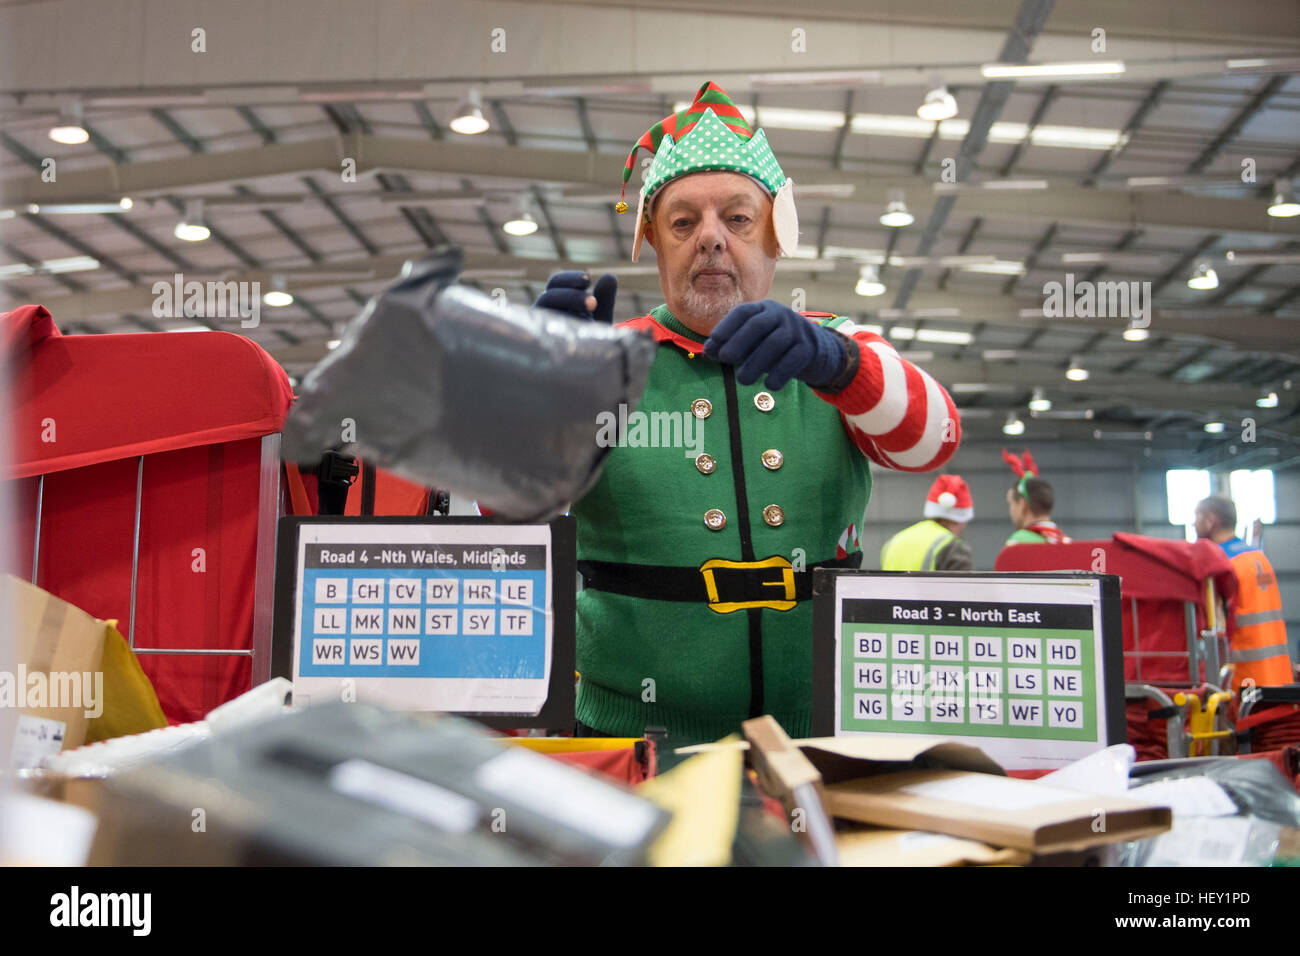 Les travailleurs de Royal Mail temp Noël Noël processus courrier au bureau de tri de Noël Royal Mail à Llantrisant, dans le sud du Pays de Galles, Royaume-Uni. Banque D'Images